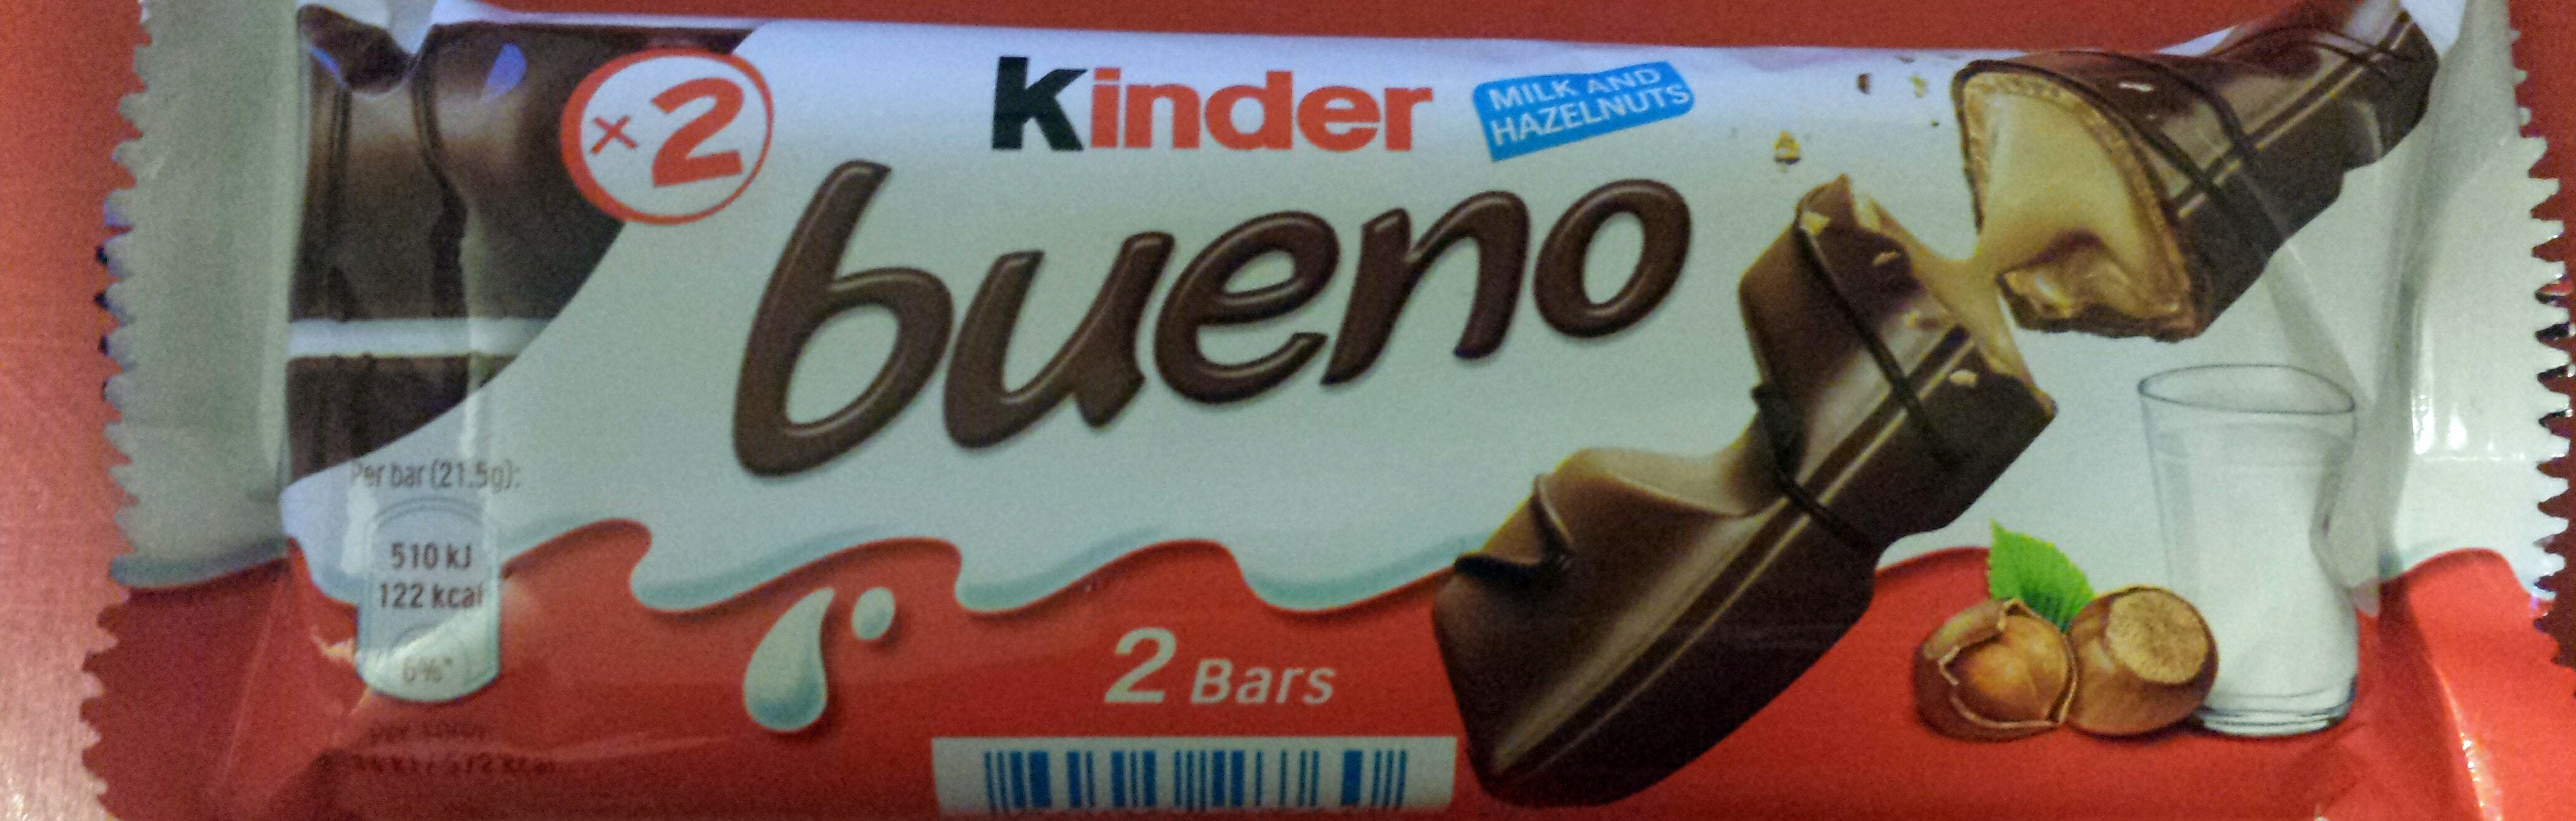 Kinder Bueno - Produkt - pl